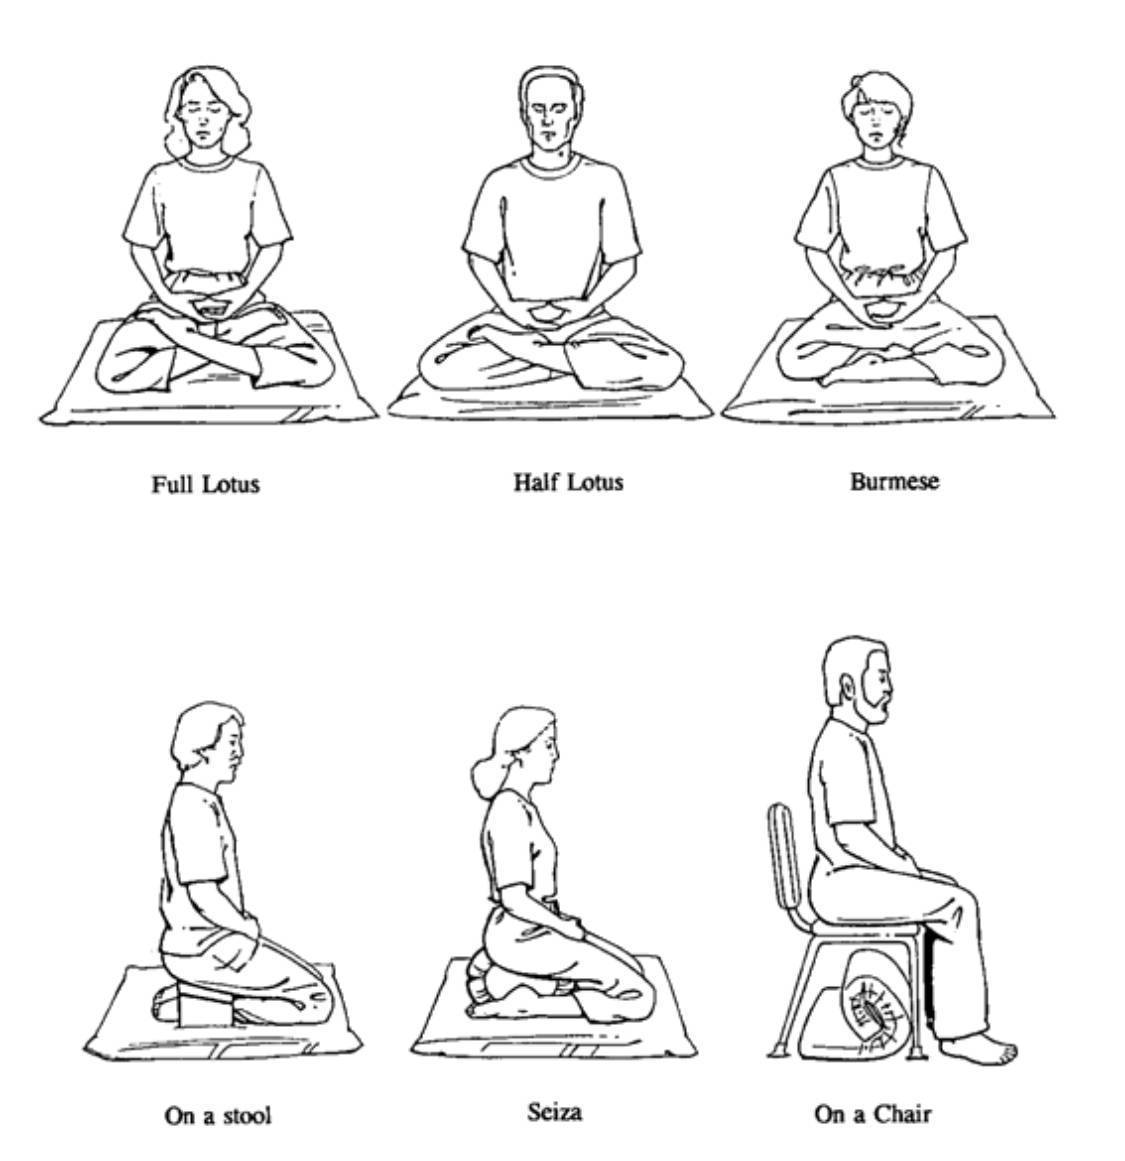 Как научиться медитировать новичкам в домашних условиях